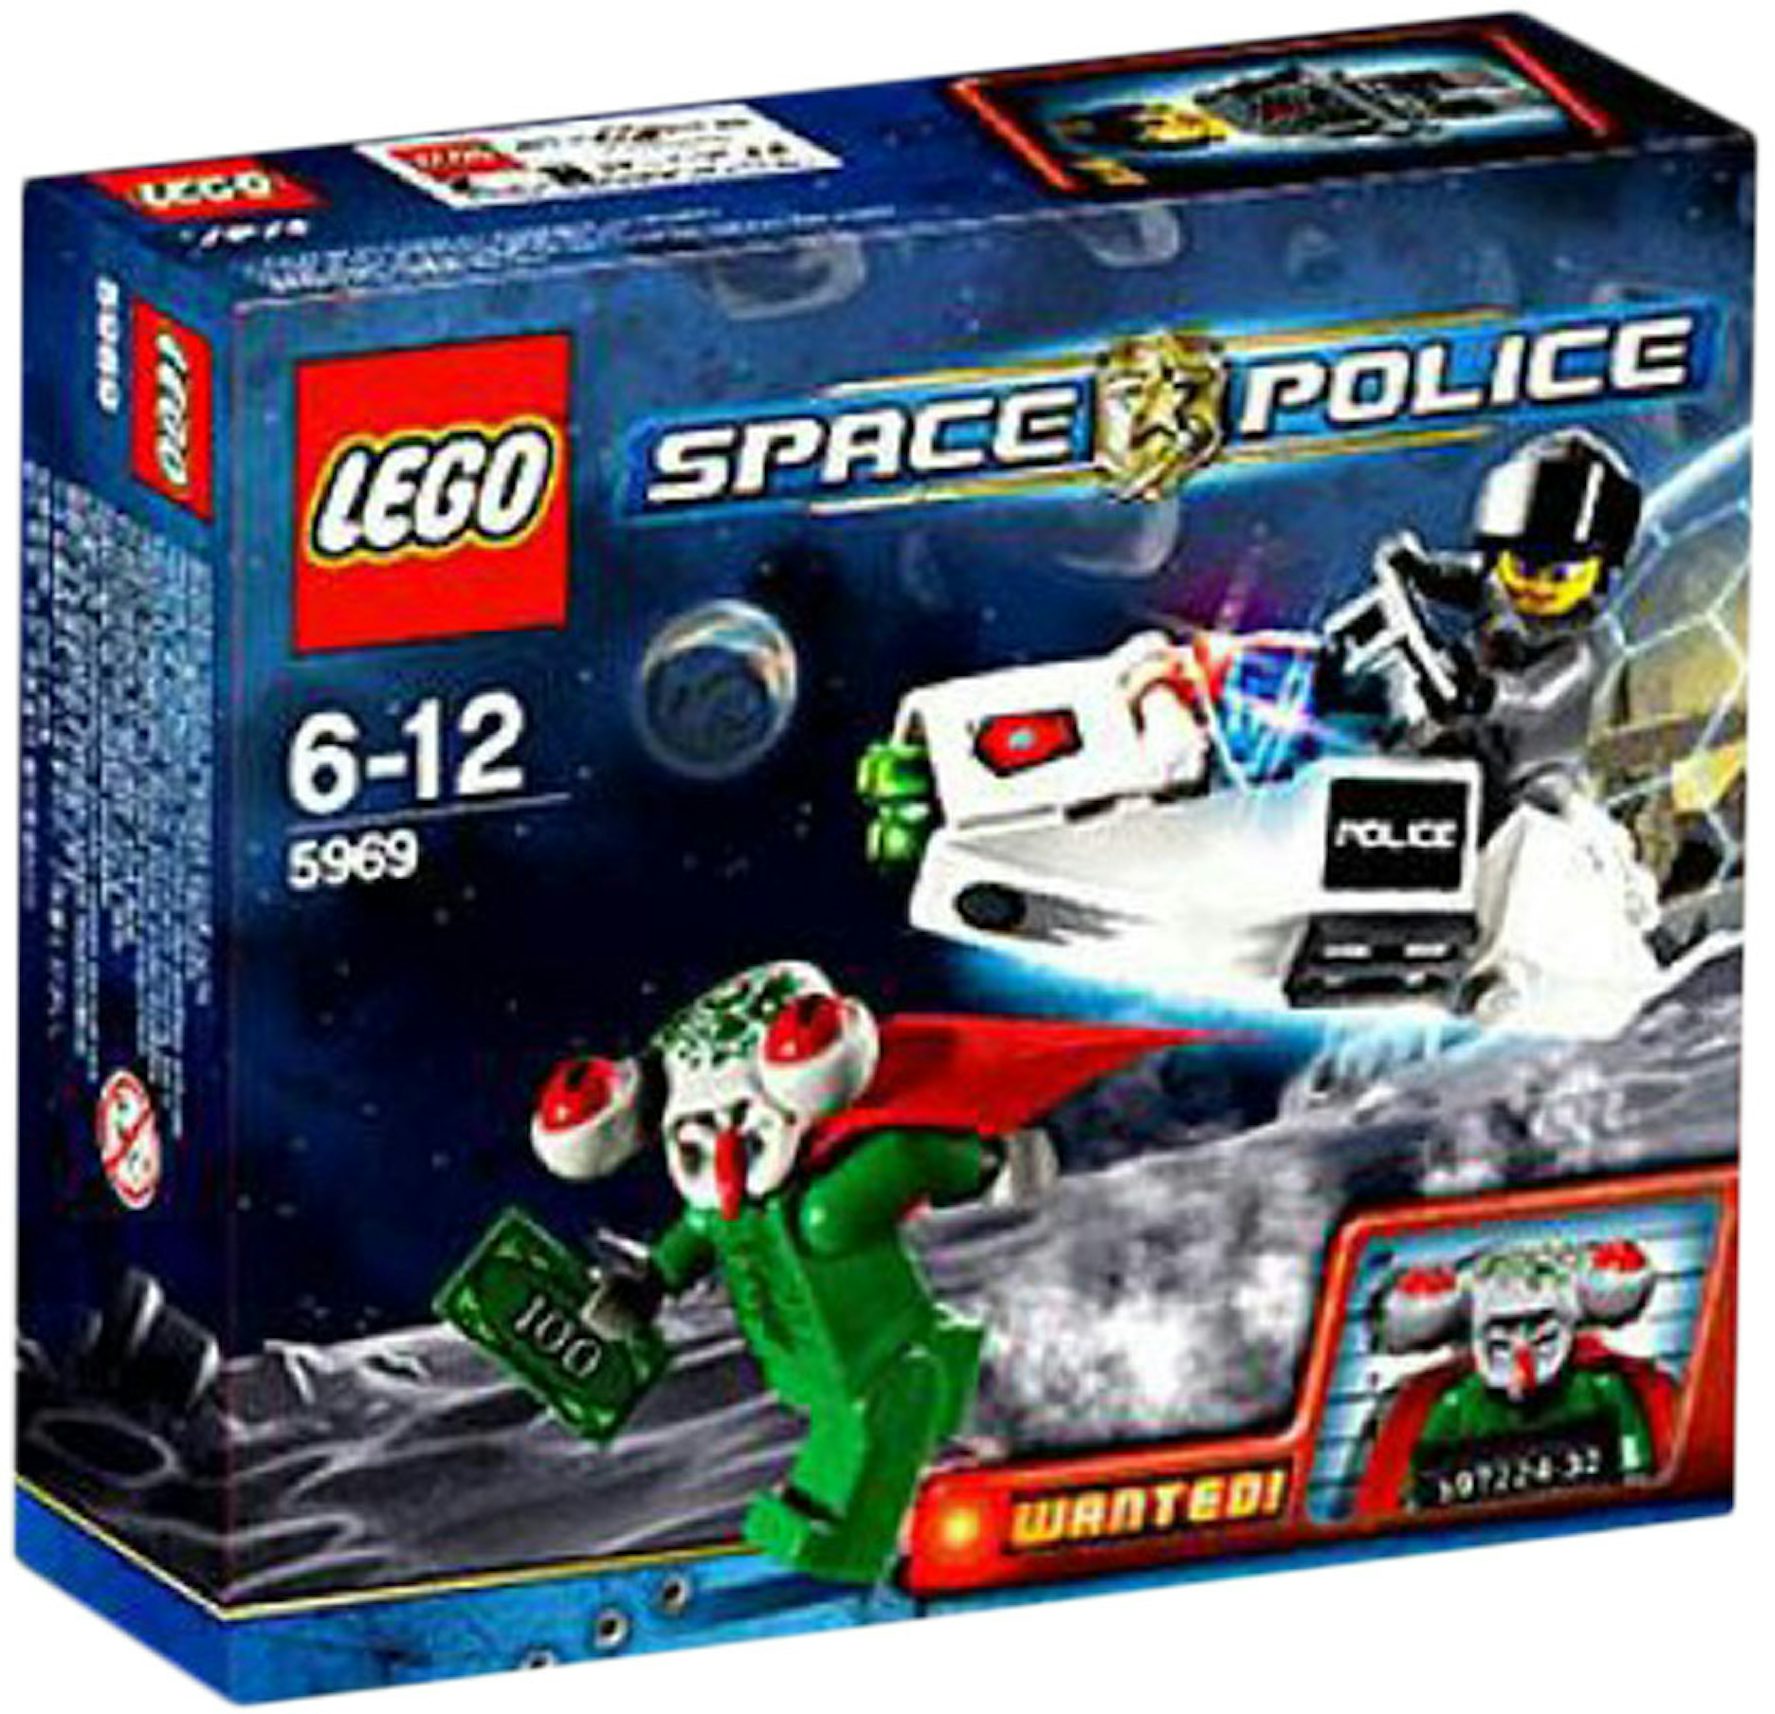 LEGO Space Police Squidman's Escape Set 5969